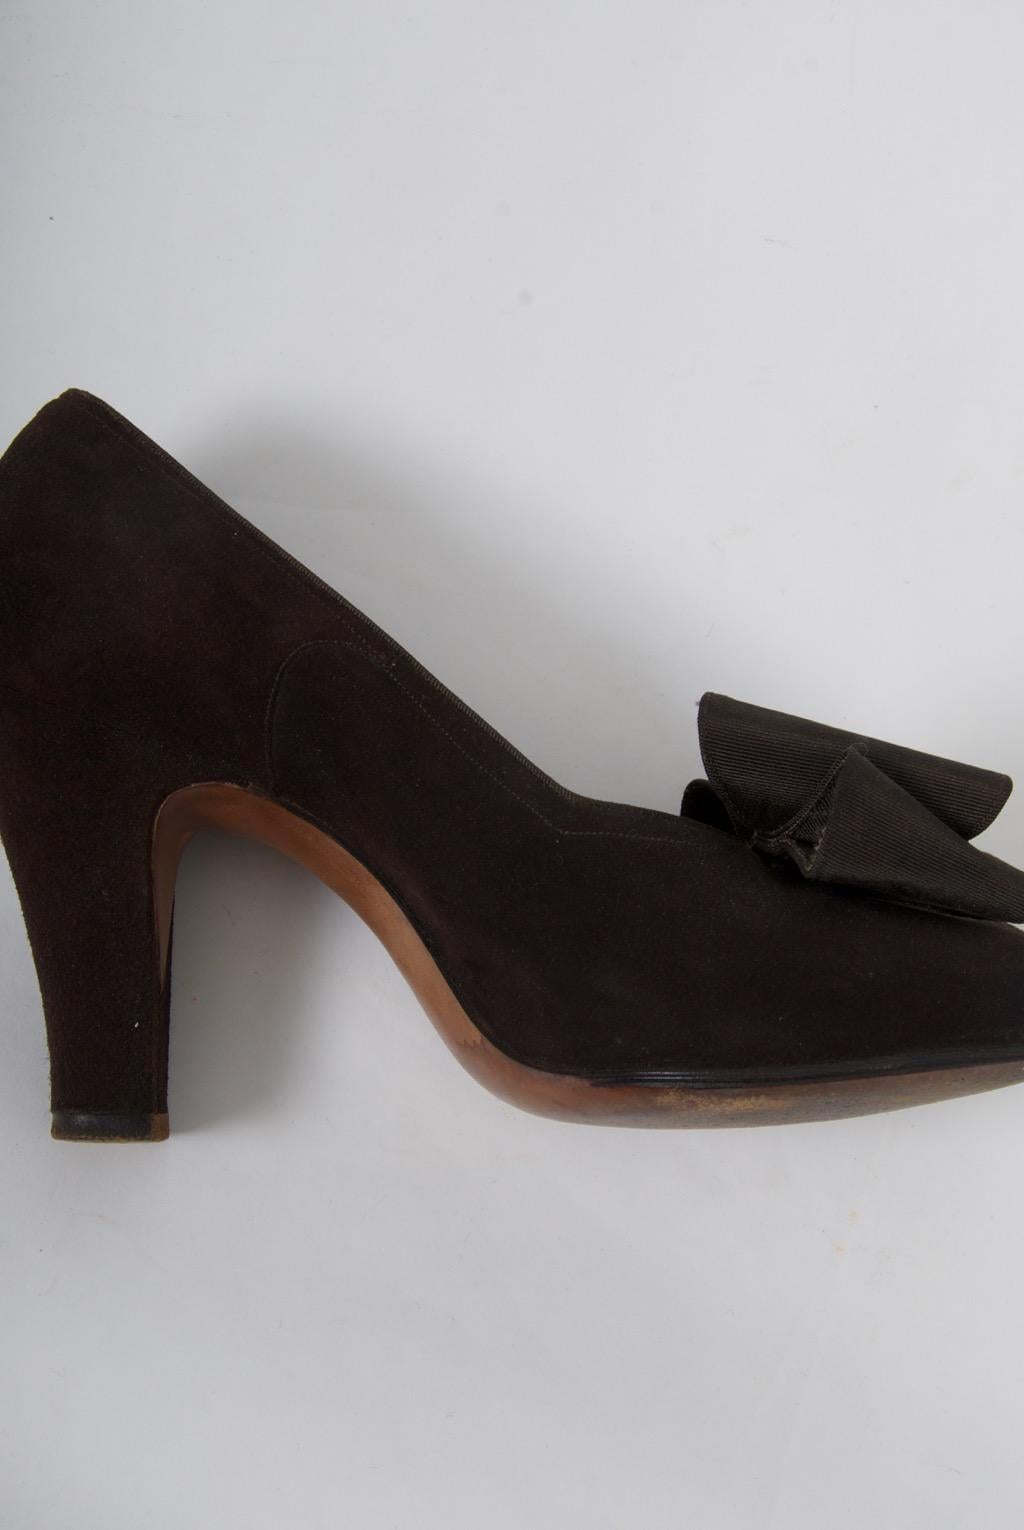 Women's Delman Brown Suede Open-Toe Shoes, c.1950 For Sale